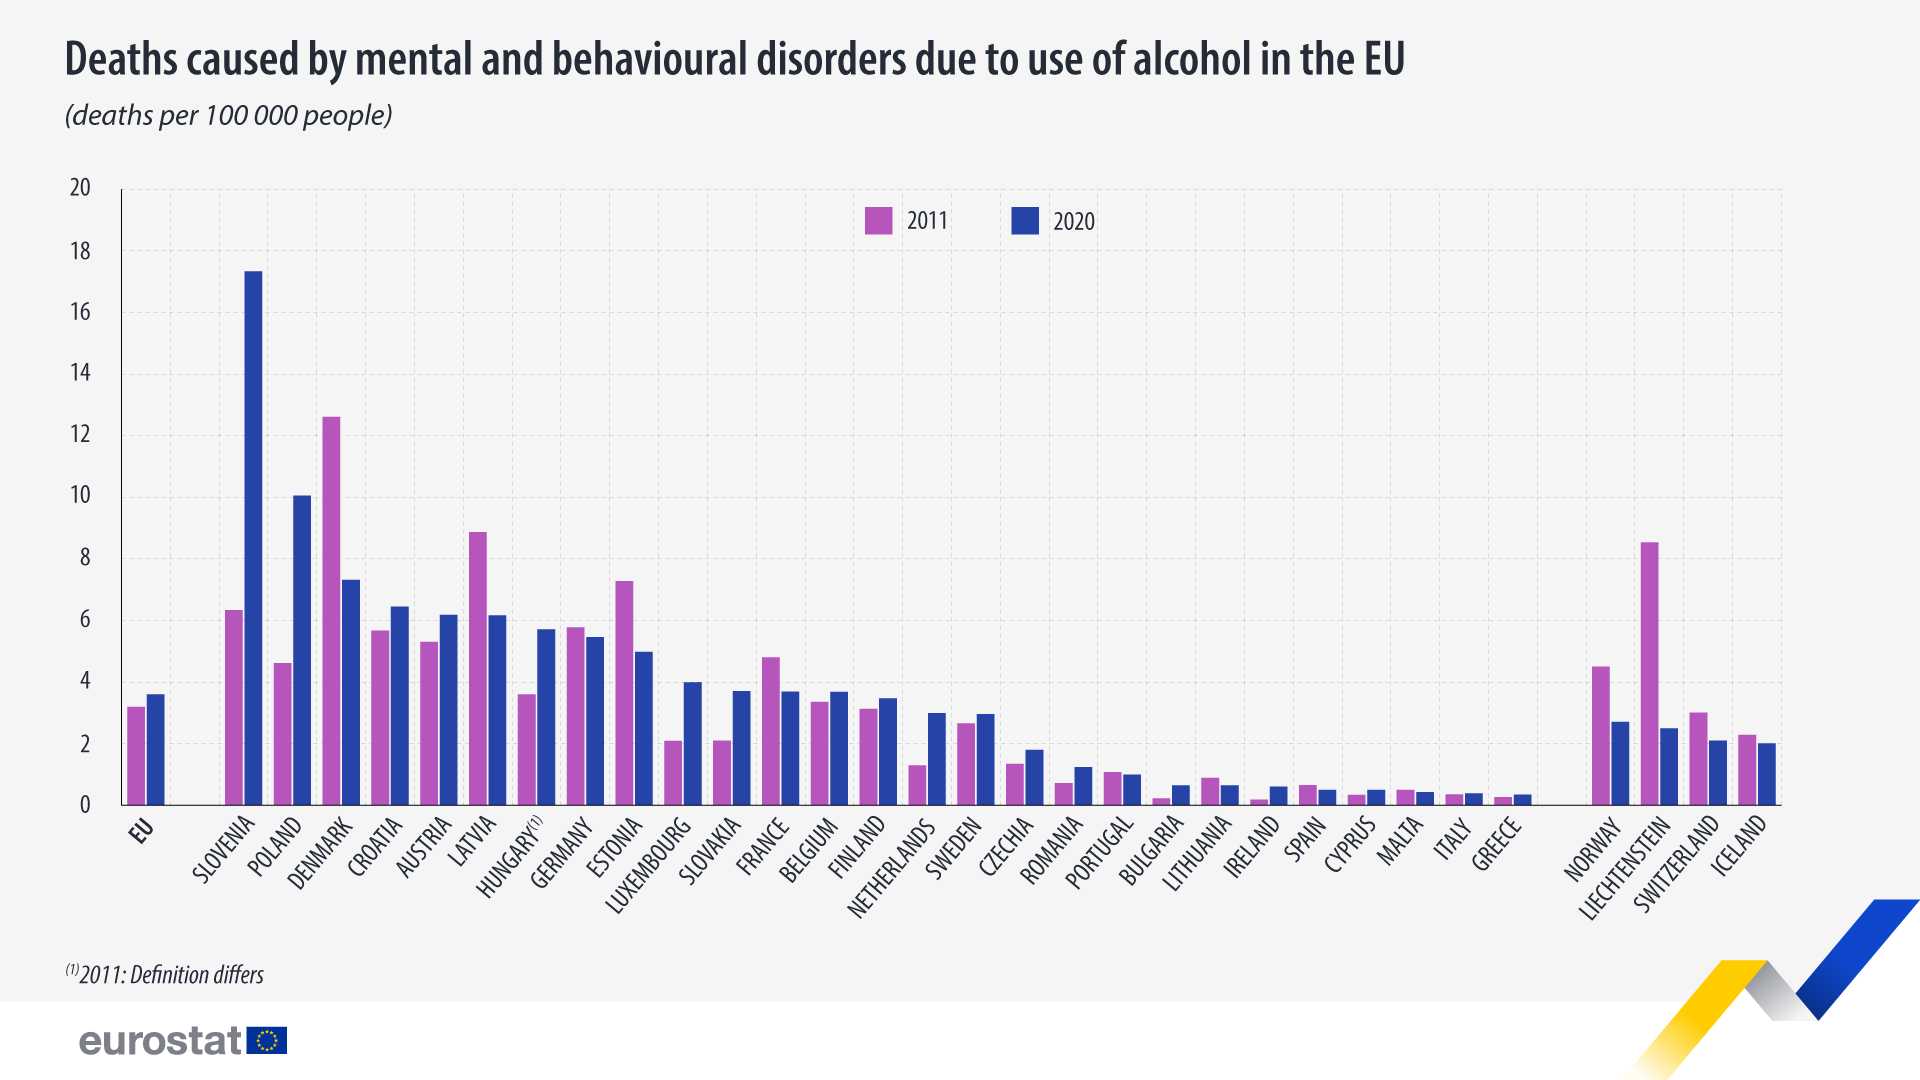 بار چارٹ: یورپی یونین میں الکحل کے استعمال کی وجہ سے ذہنی اور طرز عمل کی خرابی کی وجہ سے ہونے والی اموات، اموات کی شرح